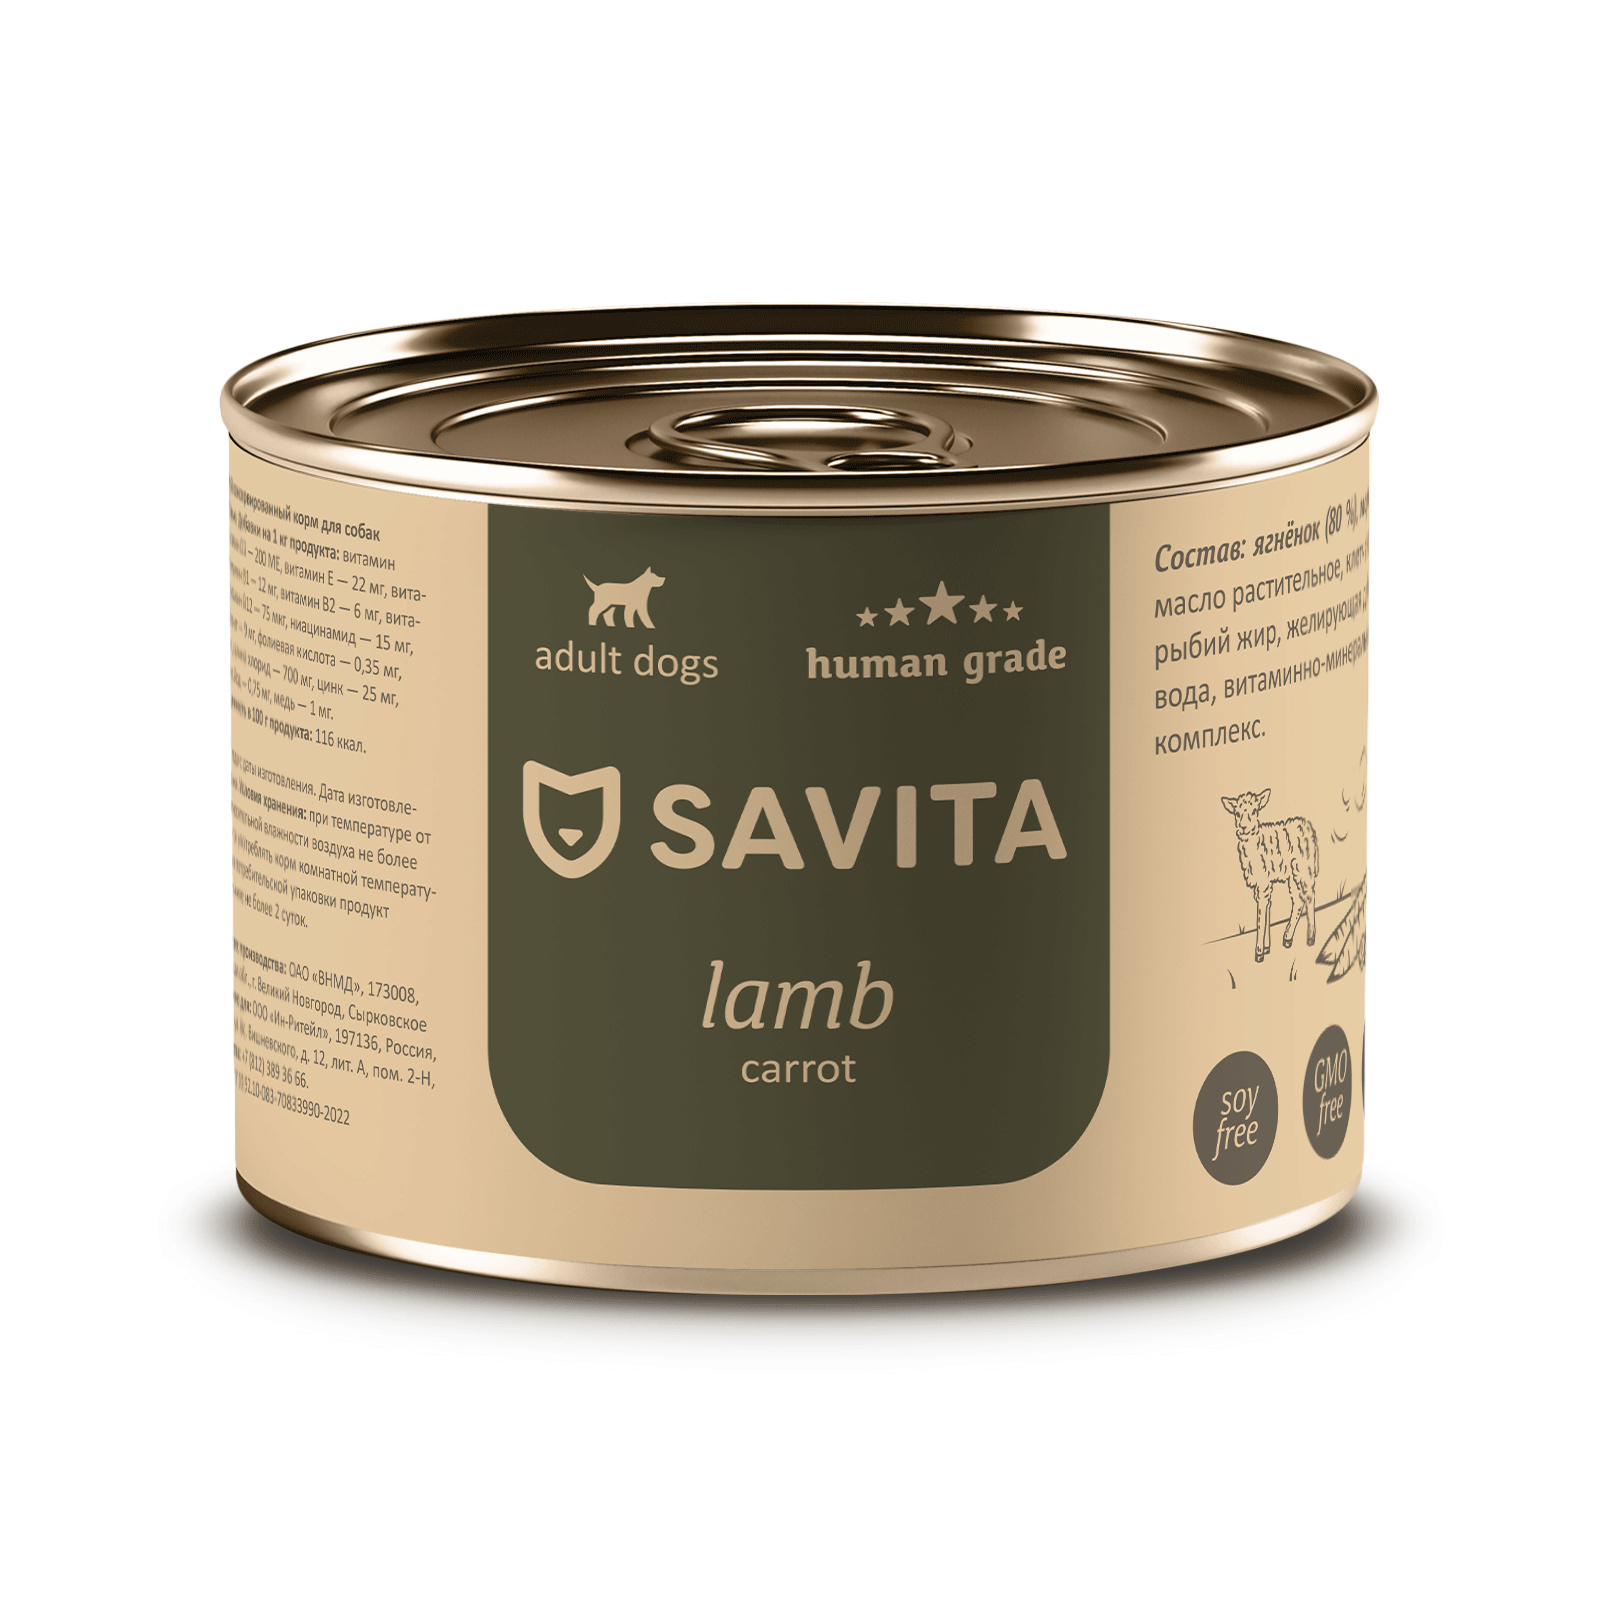 SAVITA консервы для собак« Ягнёнок с морковью» (410 г)